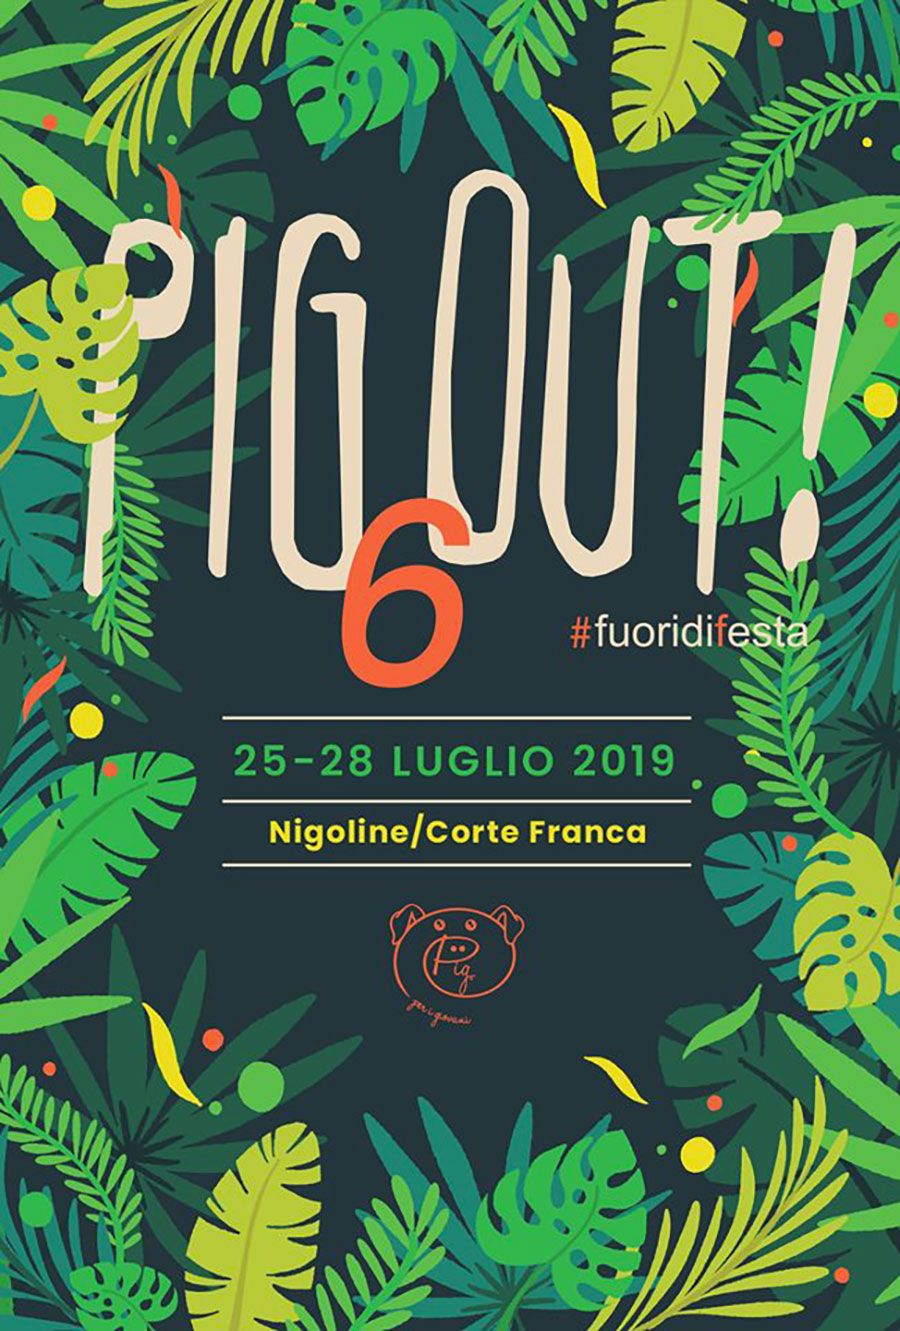 pig-out-festival-nigoline-2019